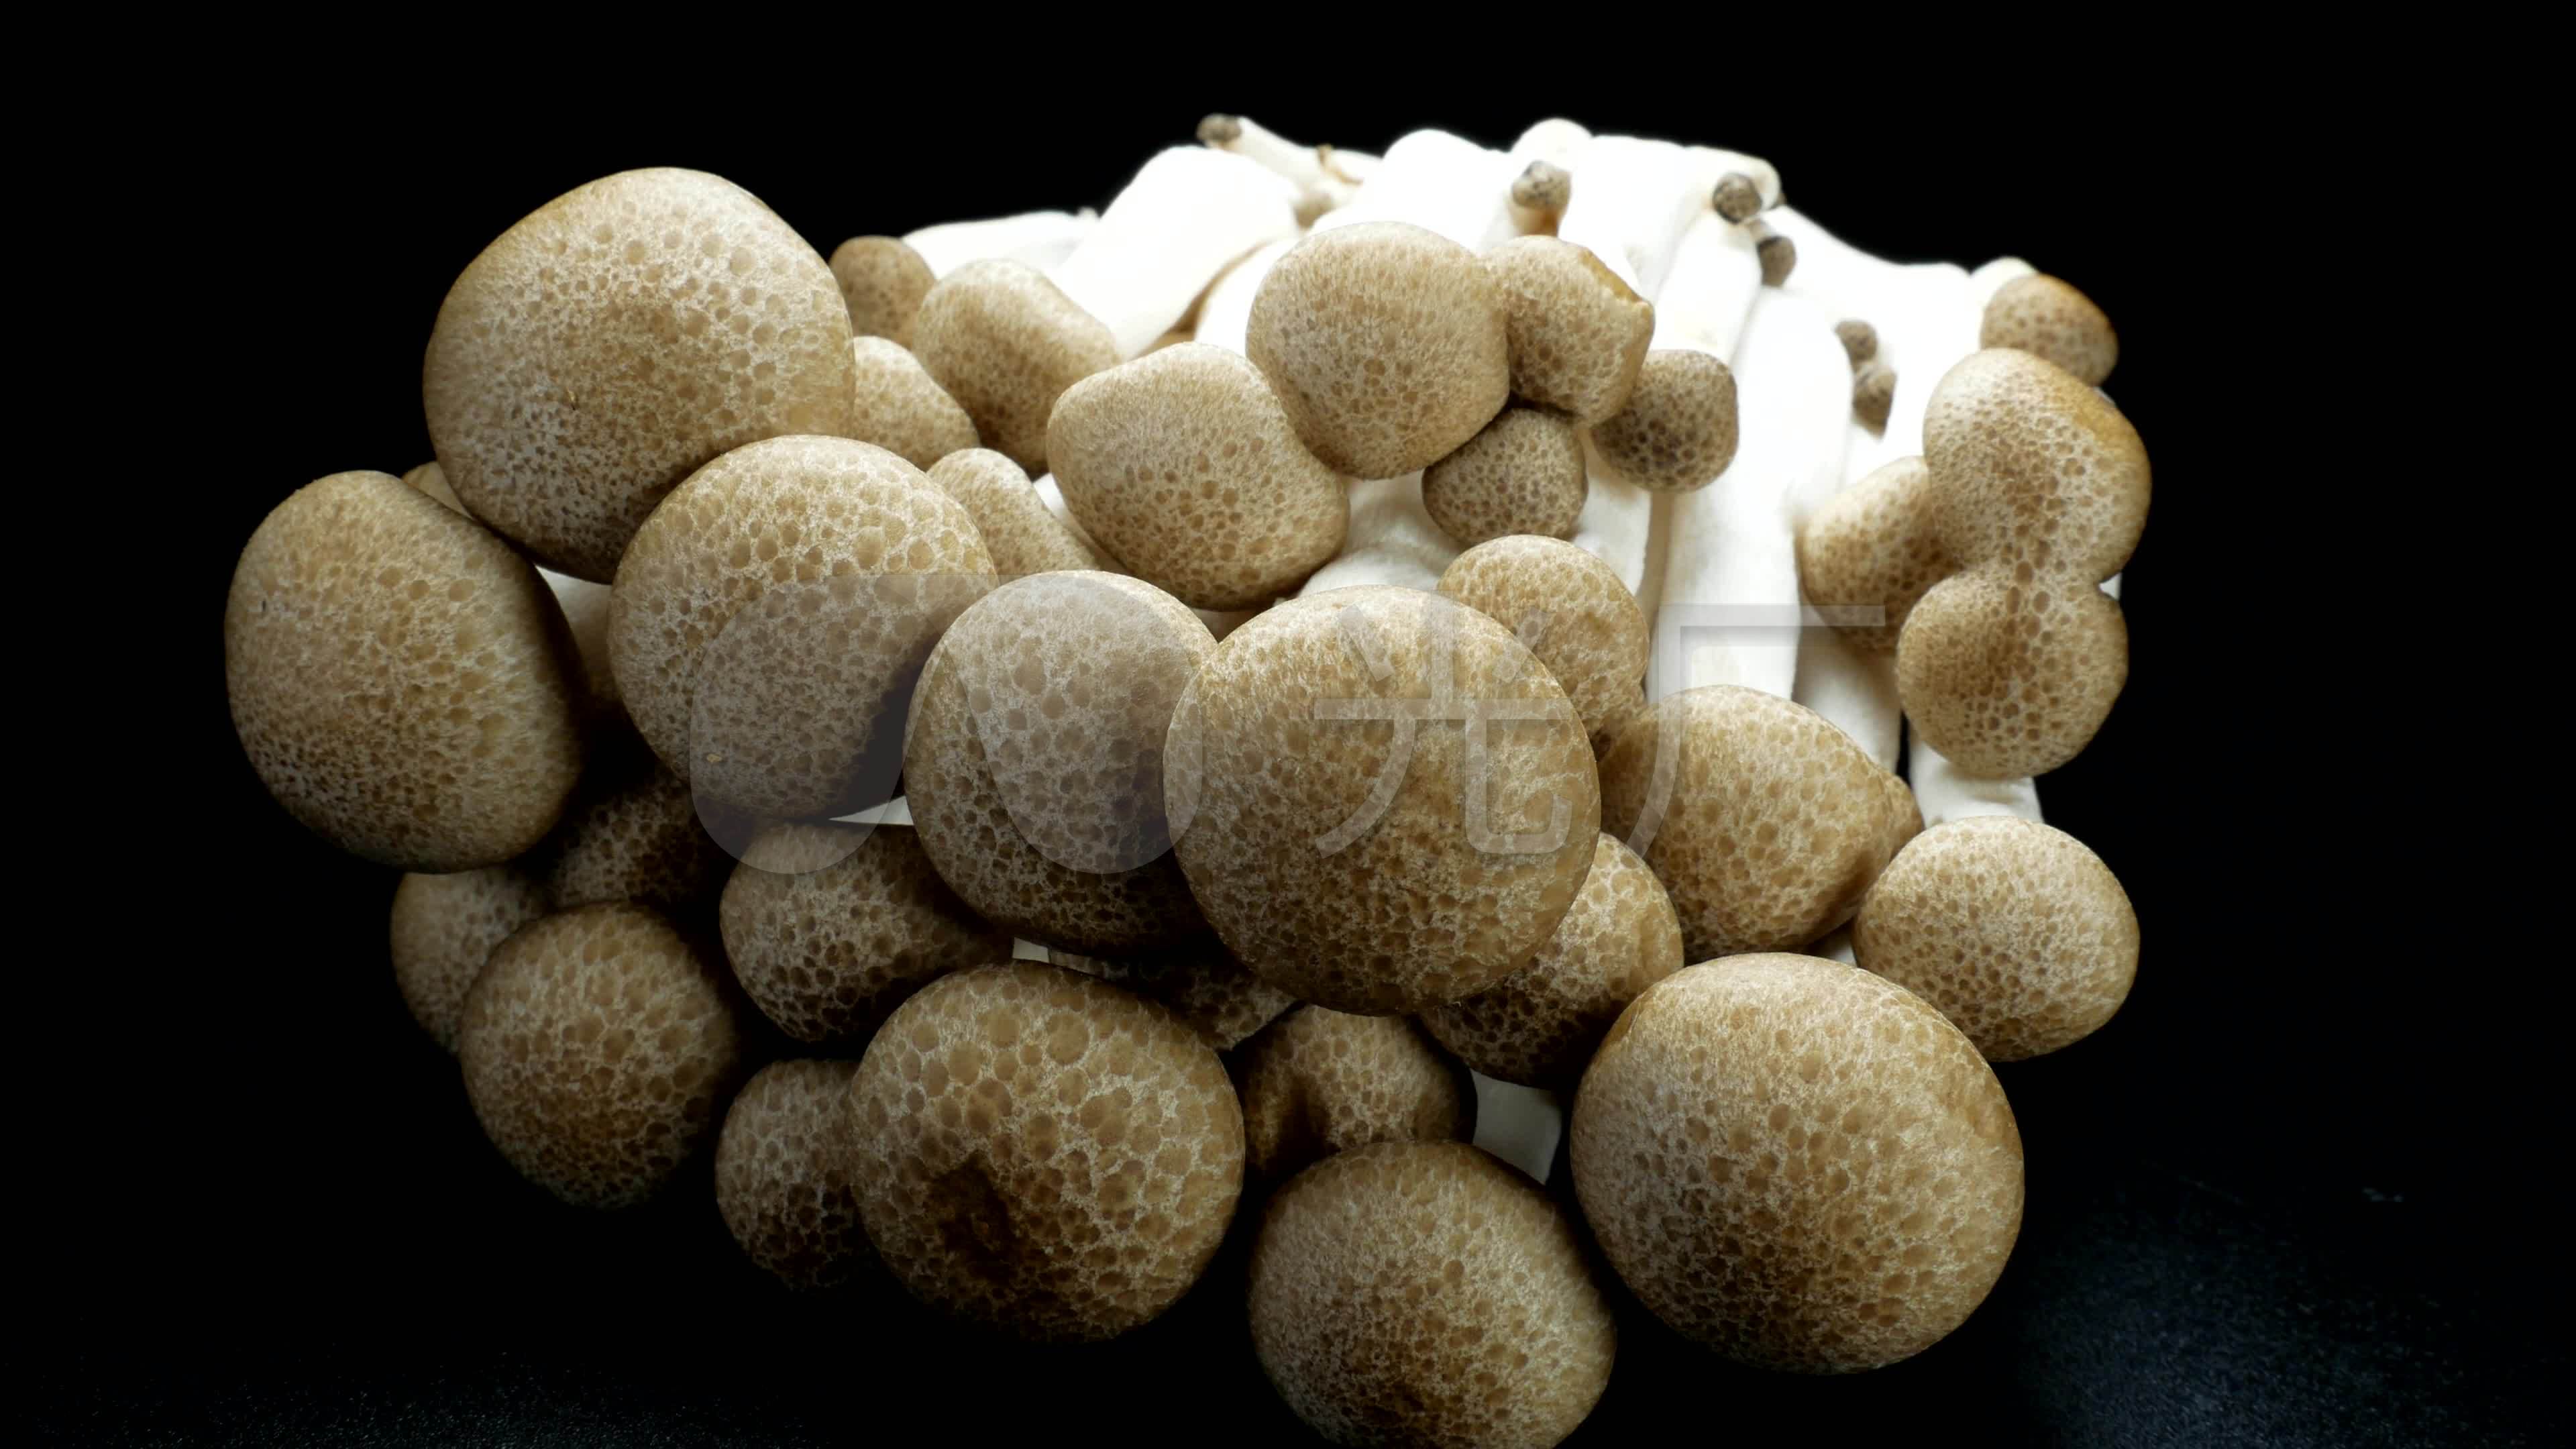 500g福建古田农家种植香菇干货无根香菇干蘑菇冬菇肉厚新货批发-阿里巴巴